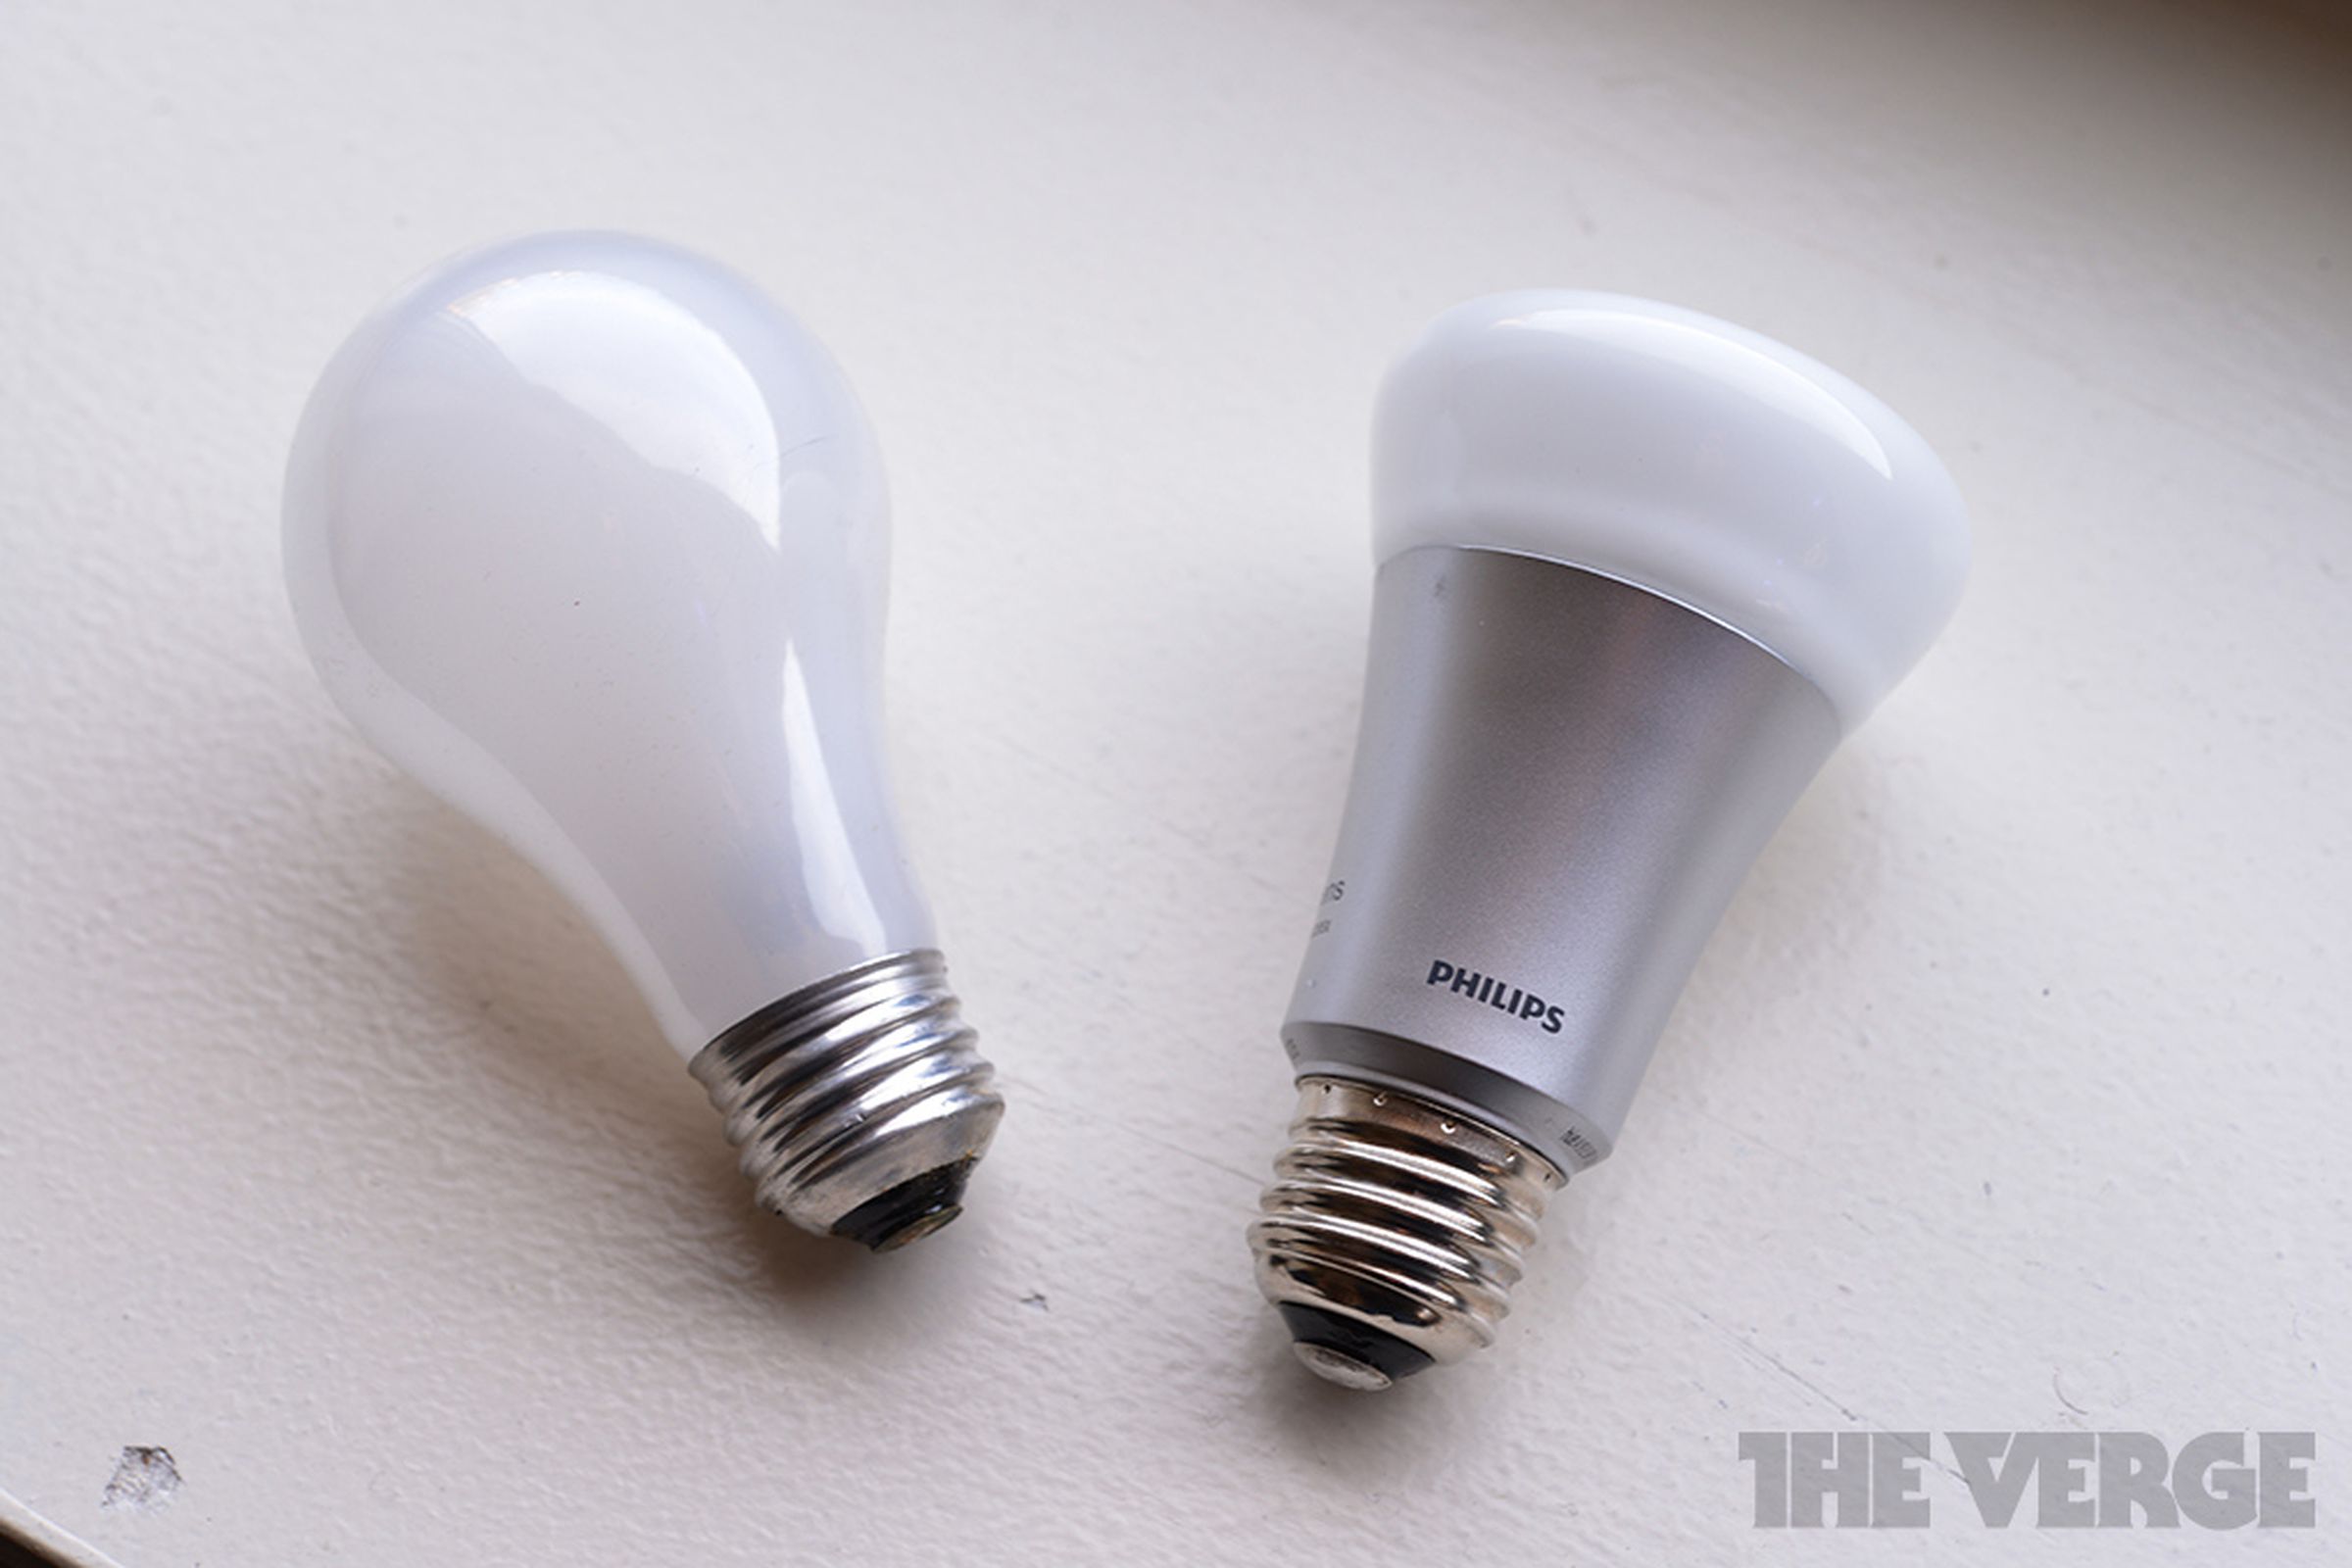 Philips LED light bulb vs incandescent stock 1020